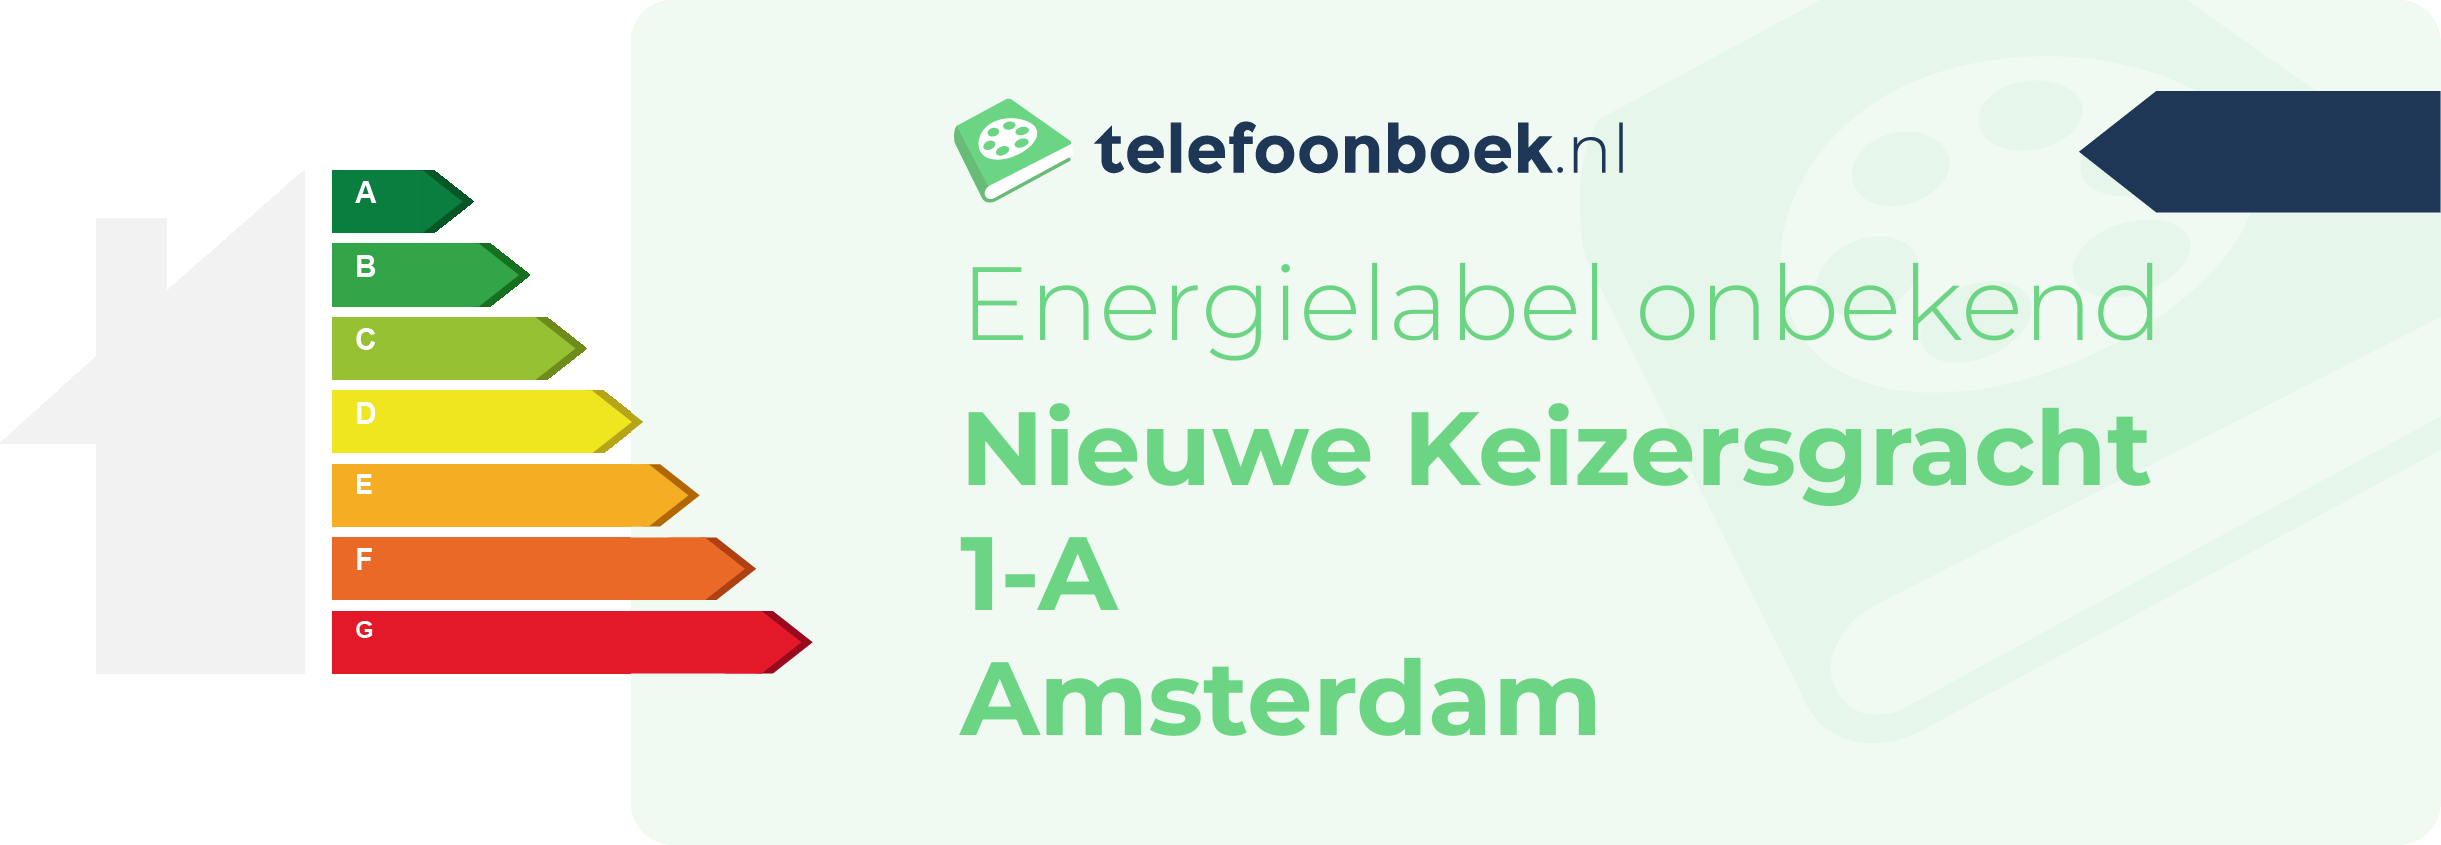 Energielabel Nieuwe Keizersgracht 1-A Amsterdam